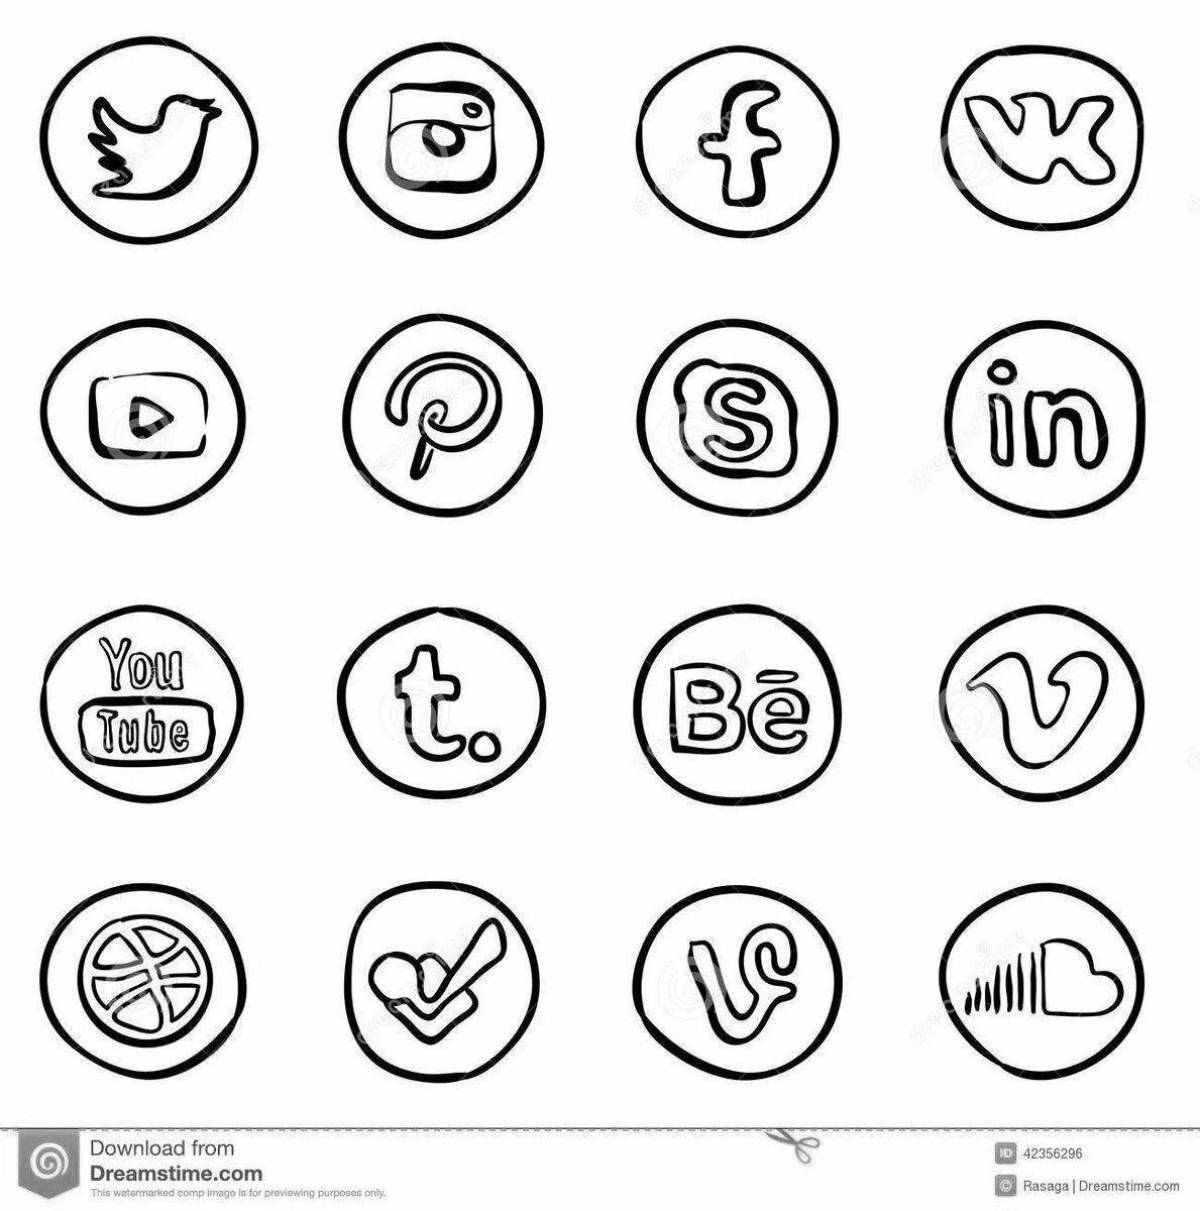 Очаровательные раскраски с логотипами социальных сетей